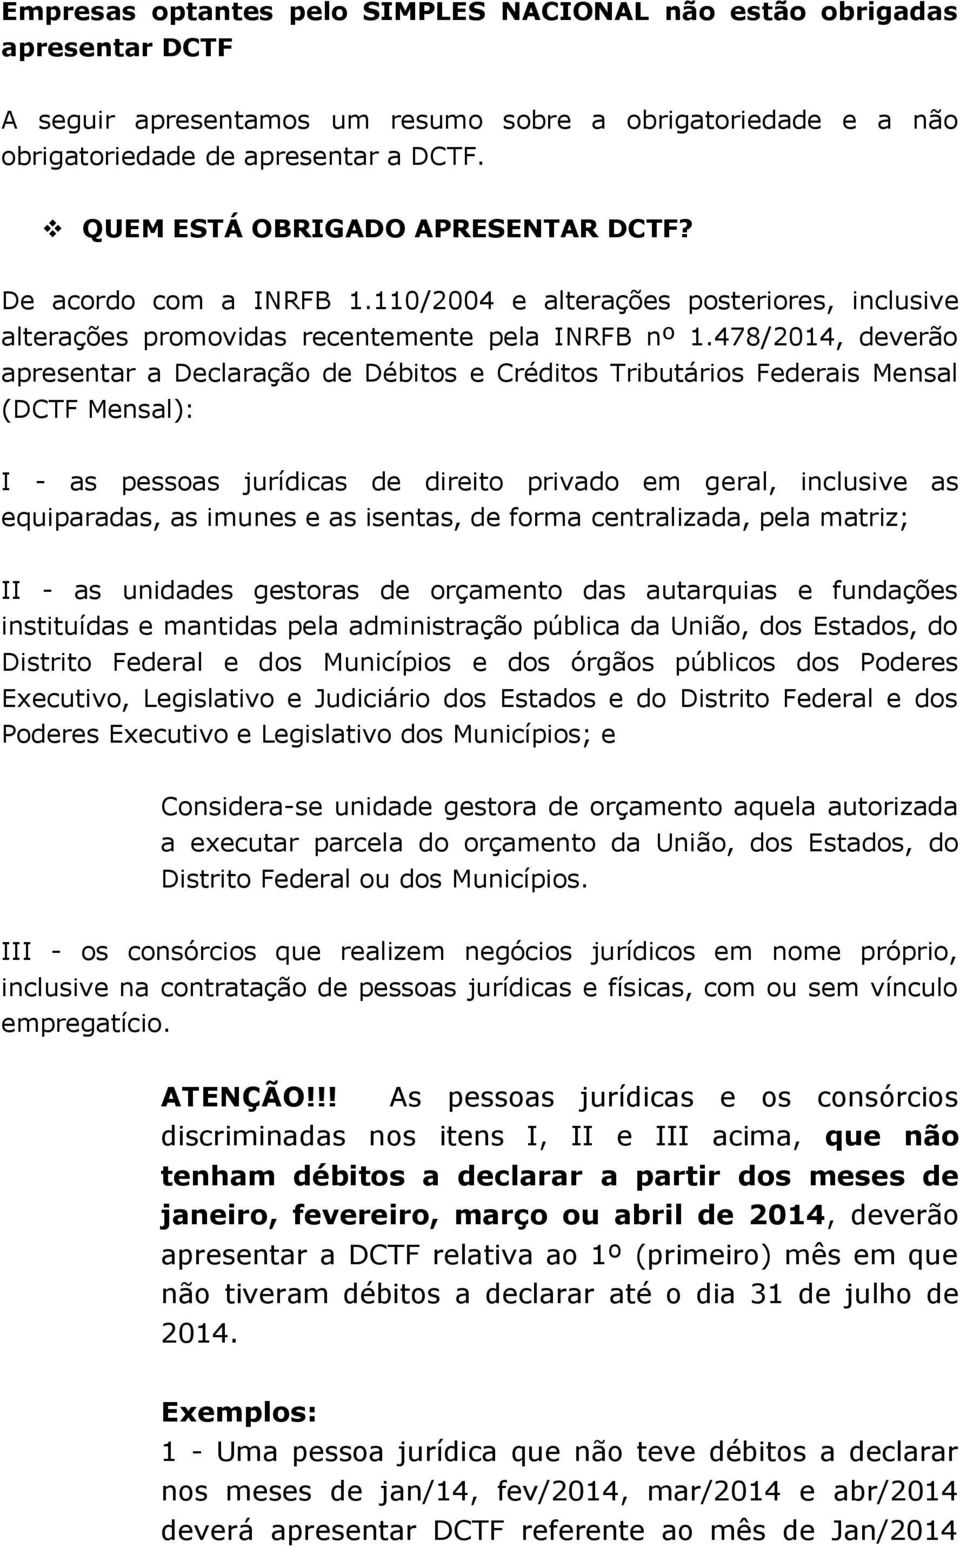 478/2014, deverão apresentar a Declaração de Débitos e Créditos Tributários Federais Mensal (DCTF Mensal): I - as pessoas jurídicas de direito privado em geral, inclusive as equiparadas, as imunes e